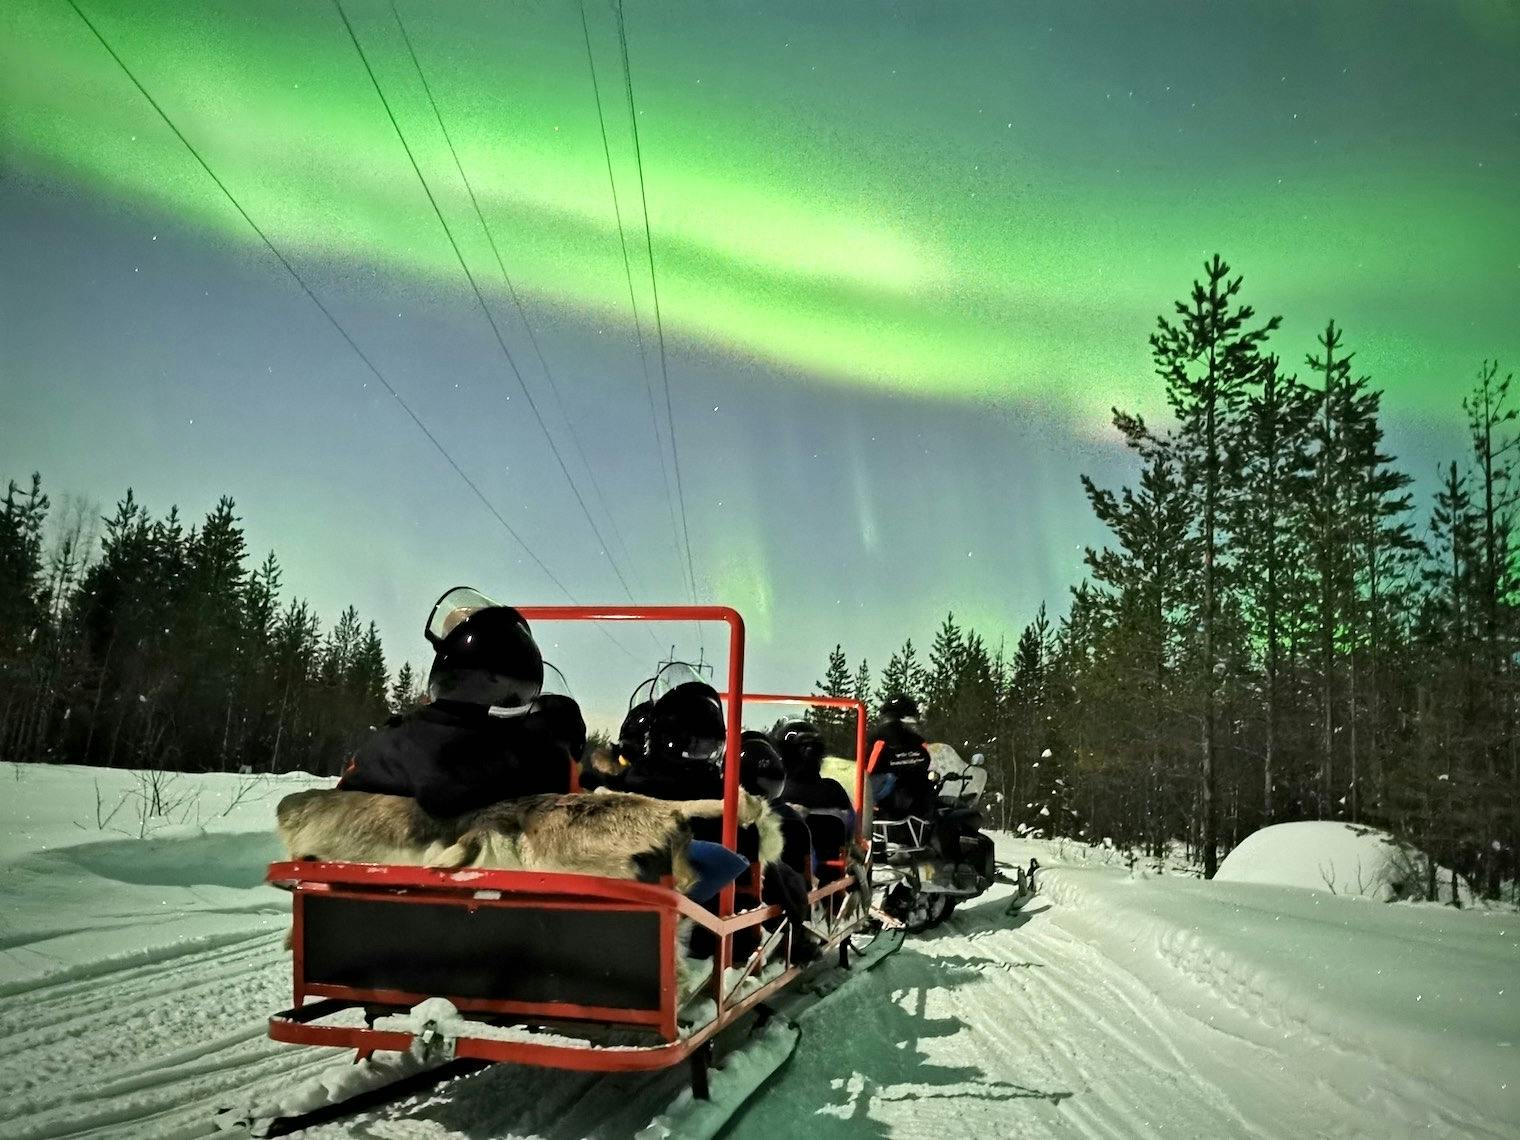 Passeio de trenó pela aurora boreal em snowmobile